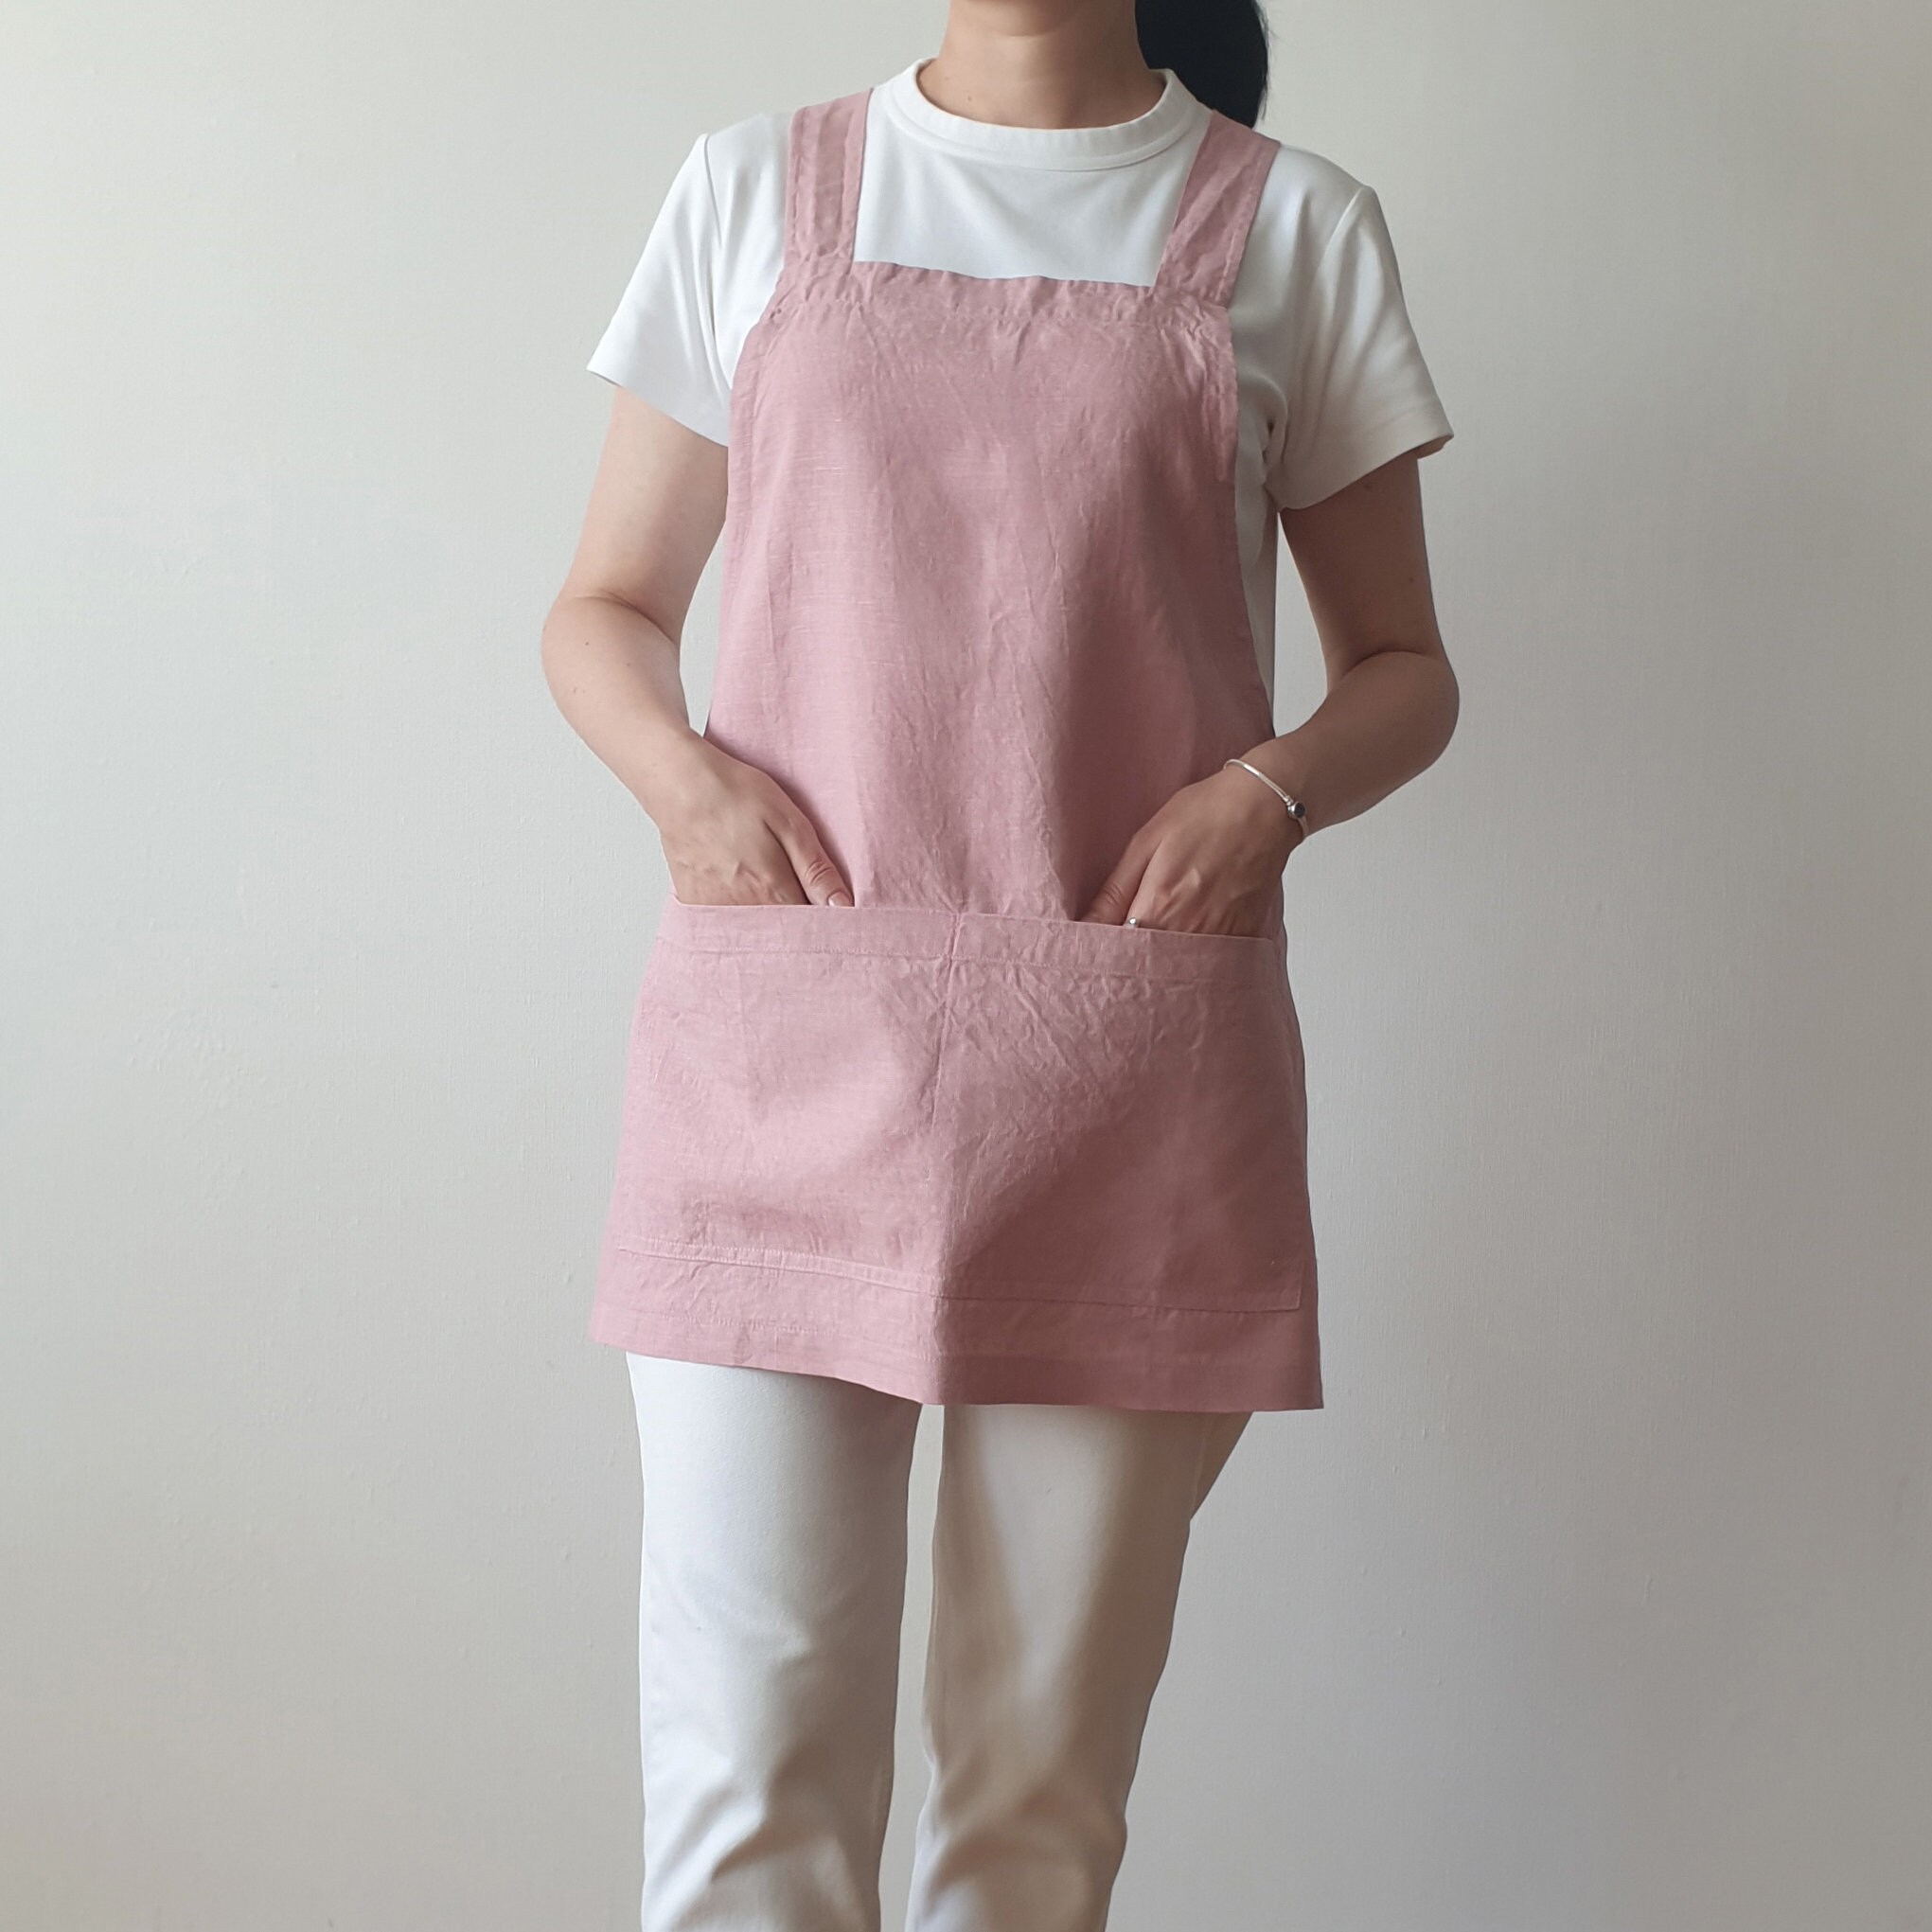 Linen cross back apron. Short harvest apron with braces